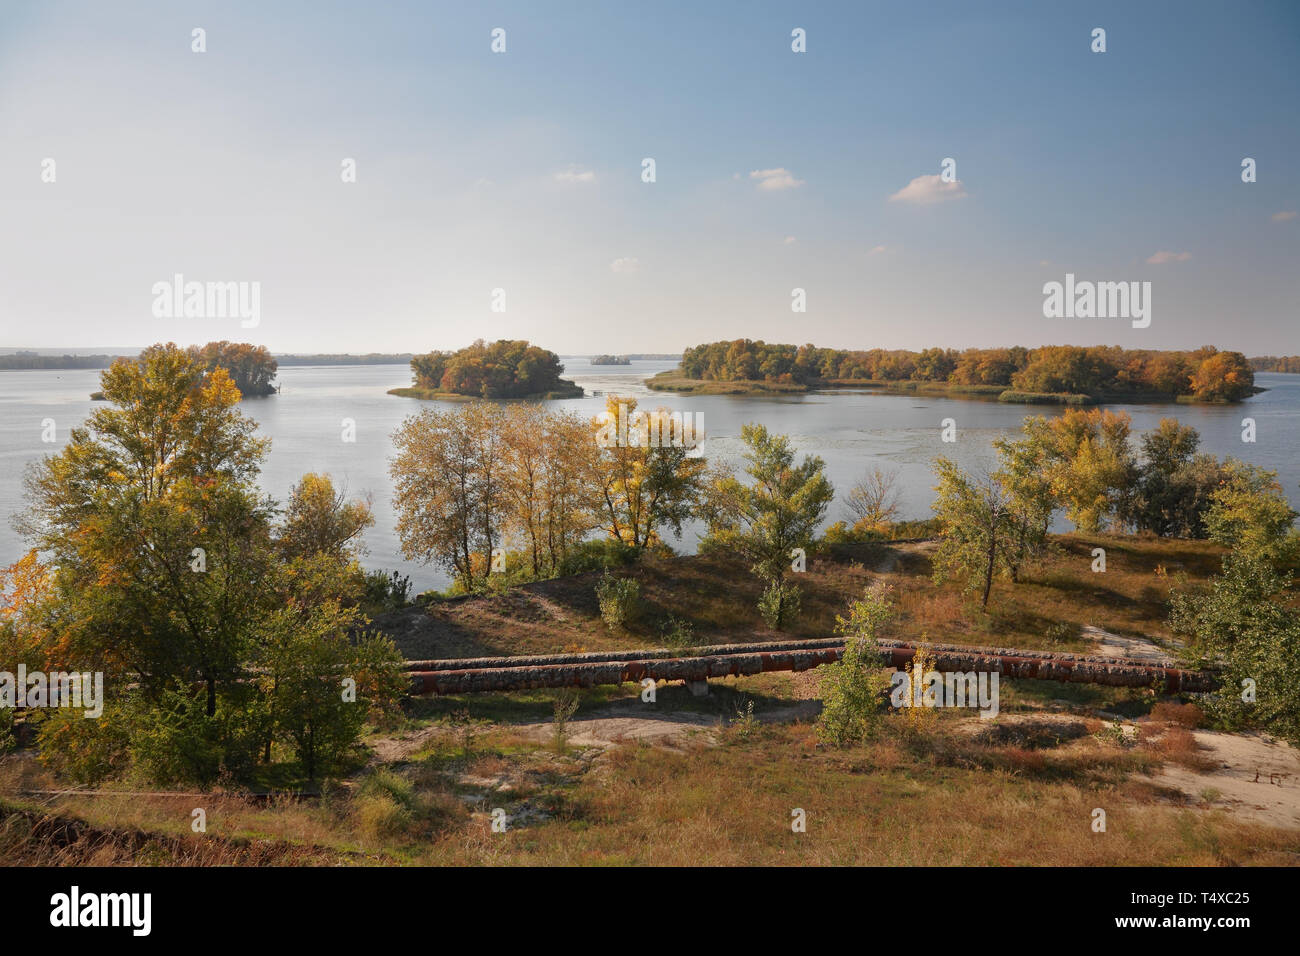 Isole sul fiume Dnieper, pipeline attraverso il fiume, paesaggio autunnale Foto Stock